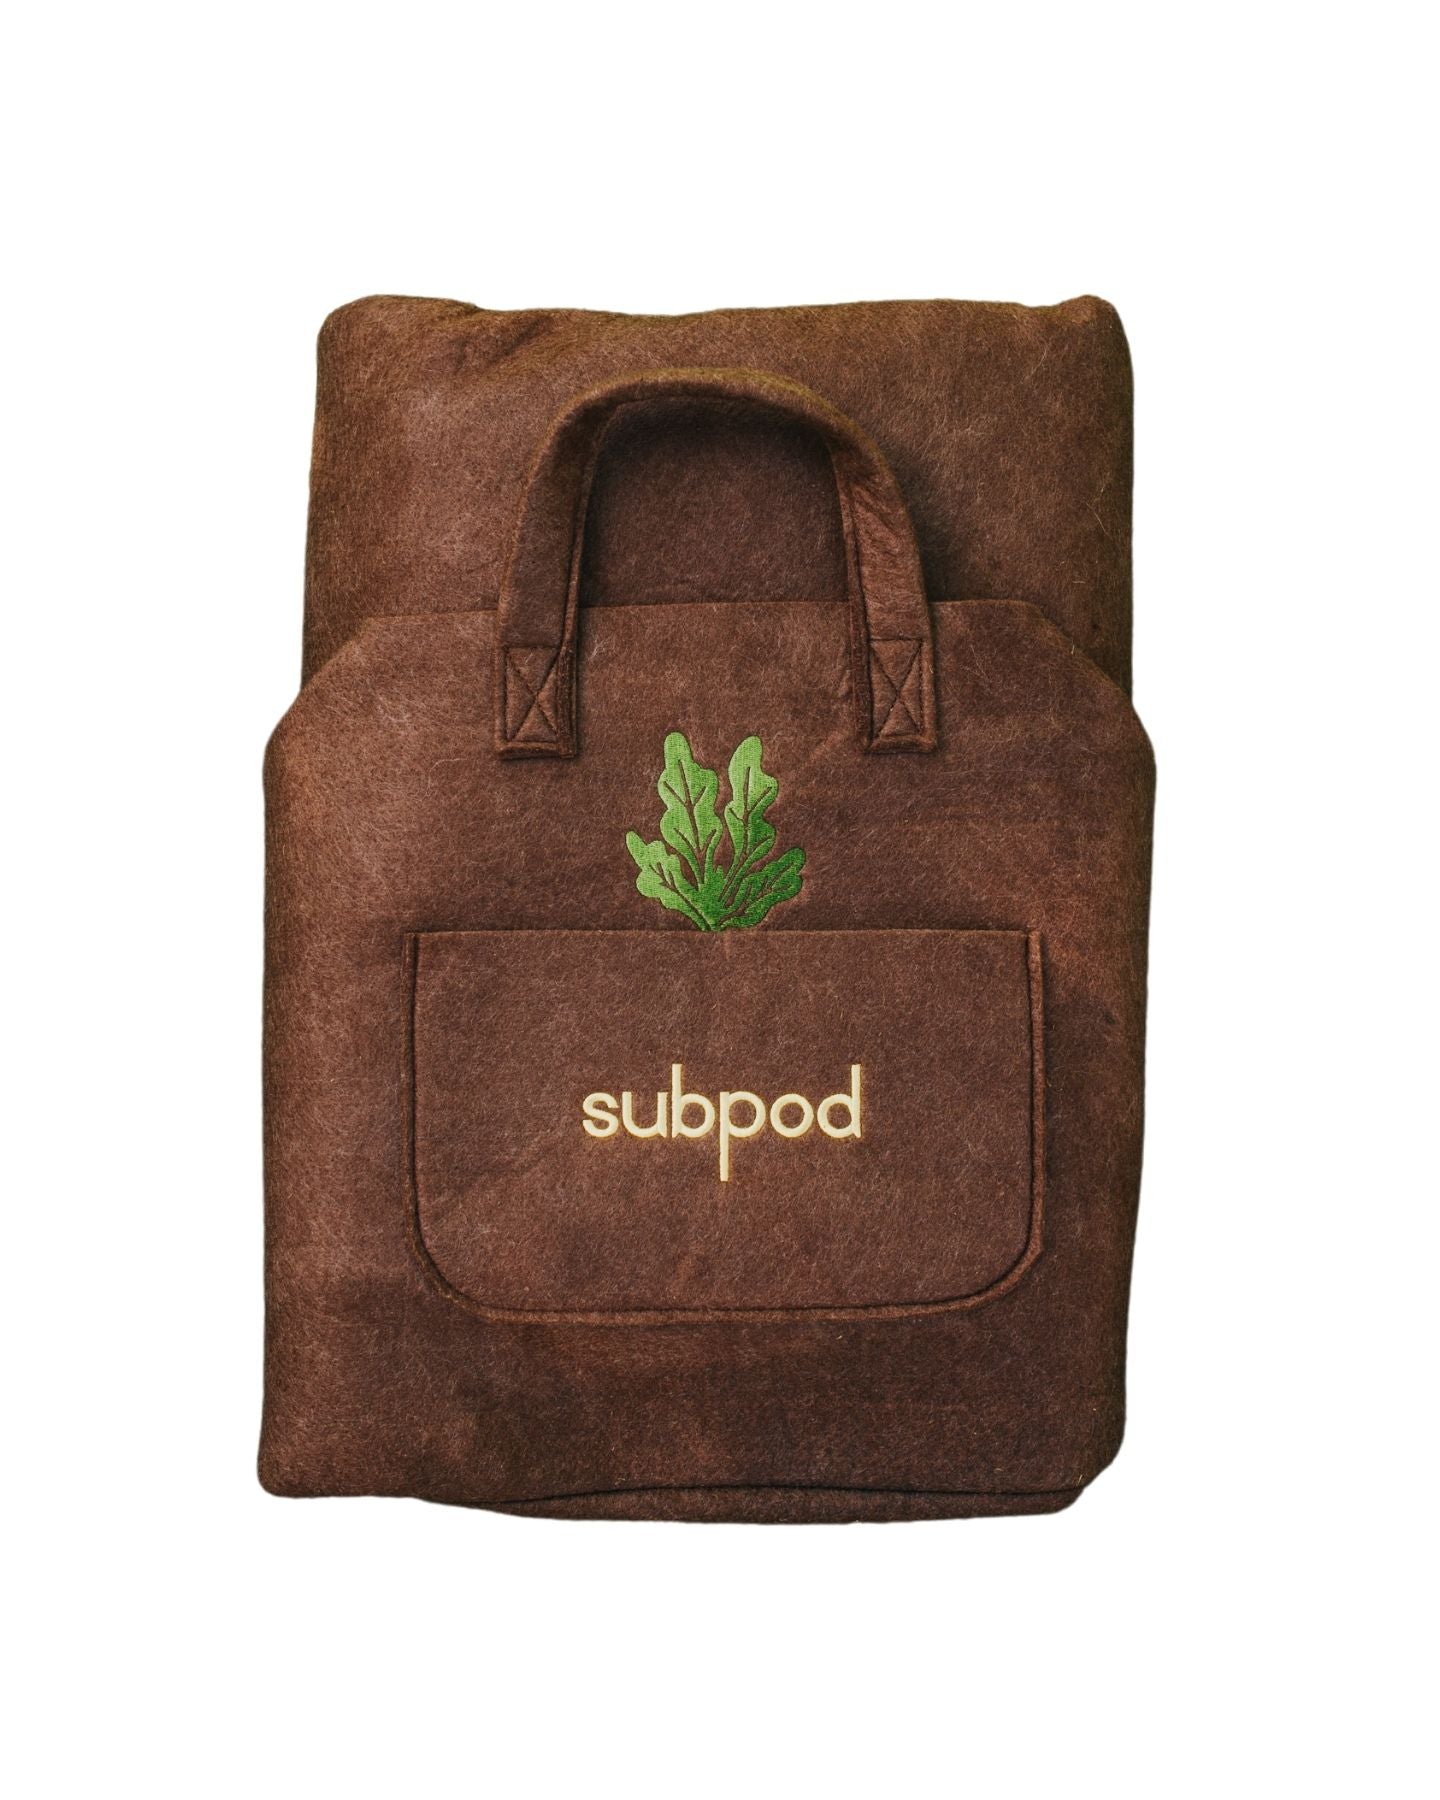 subpod grow bag with green embroidery